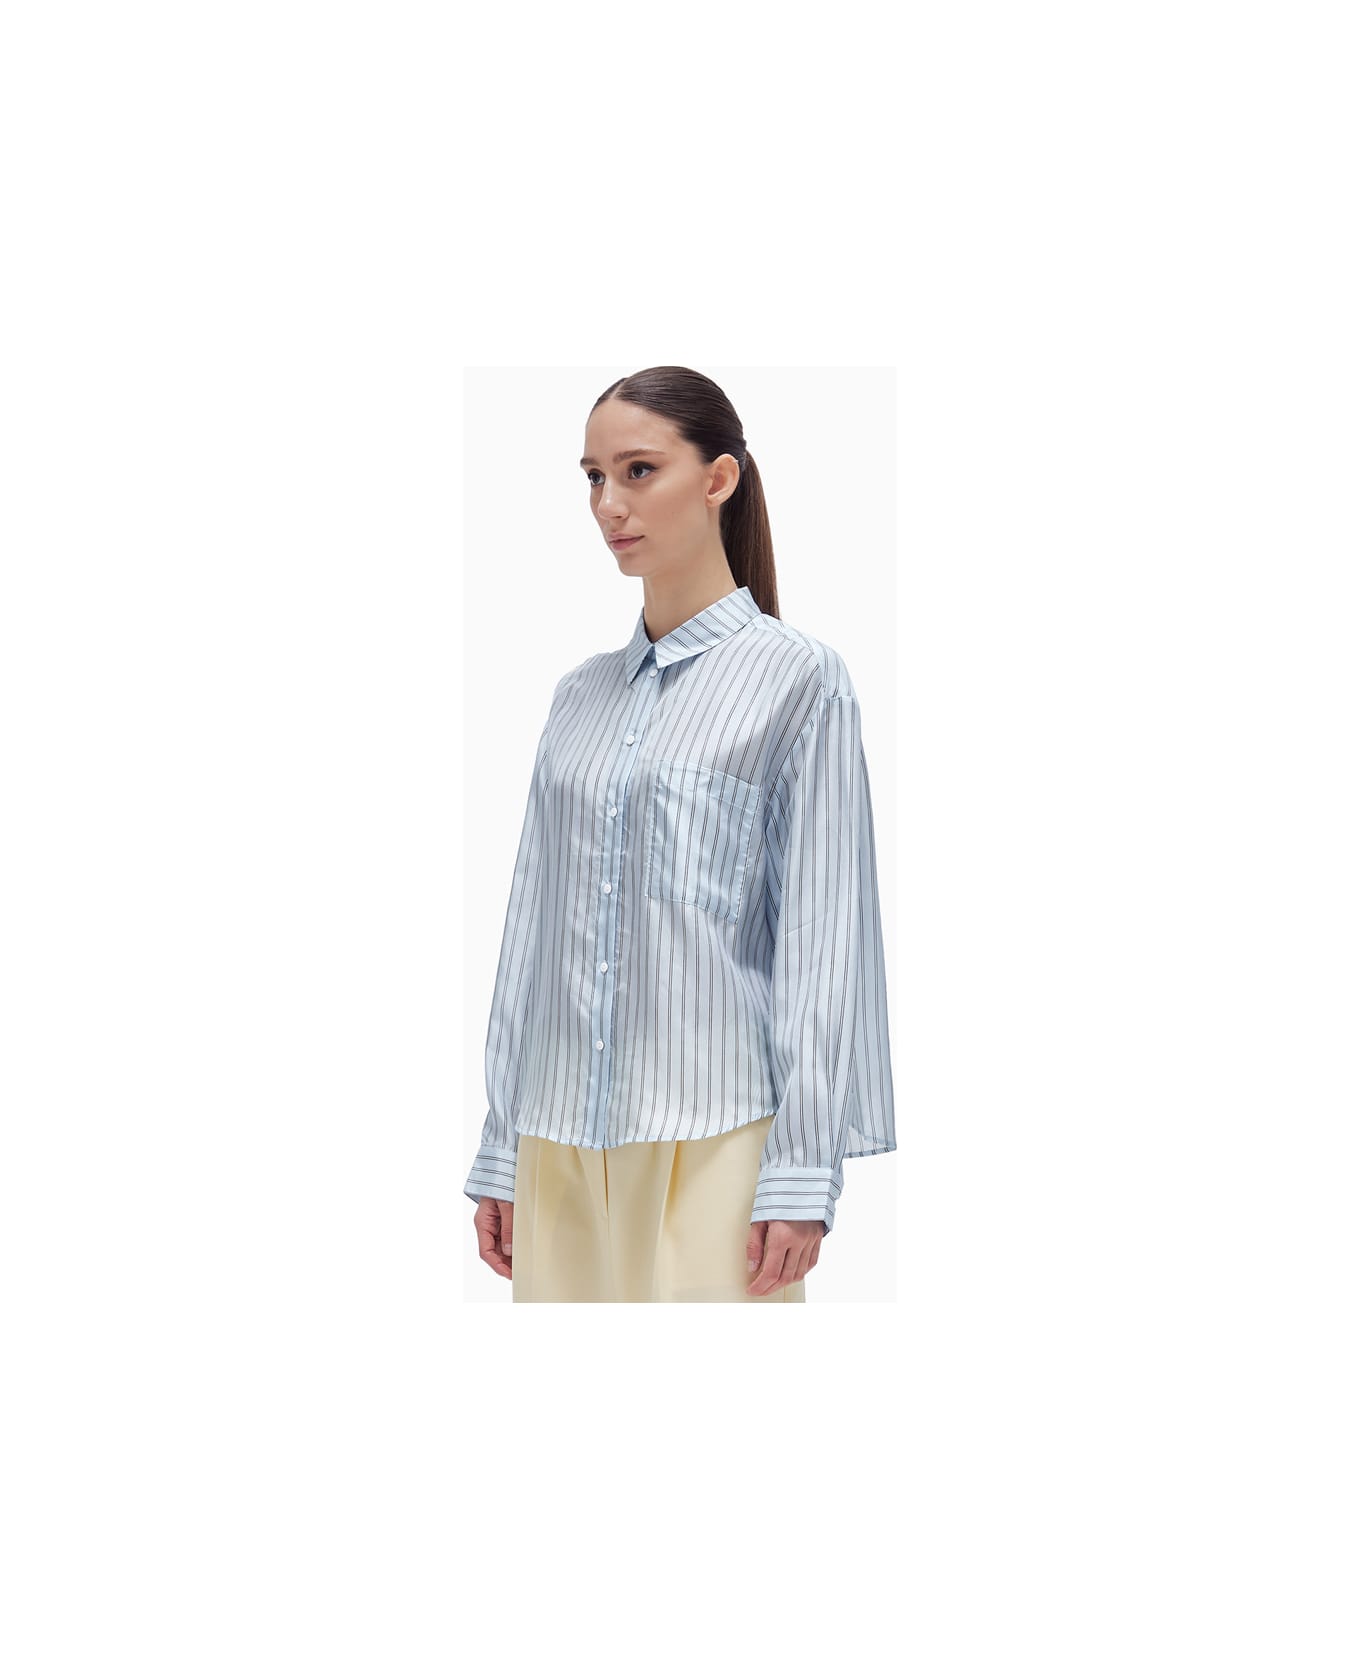 Herskind River Shirt - Light Blue Stripe シャツ